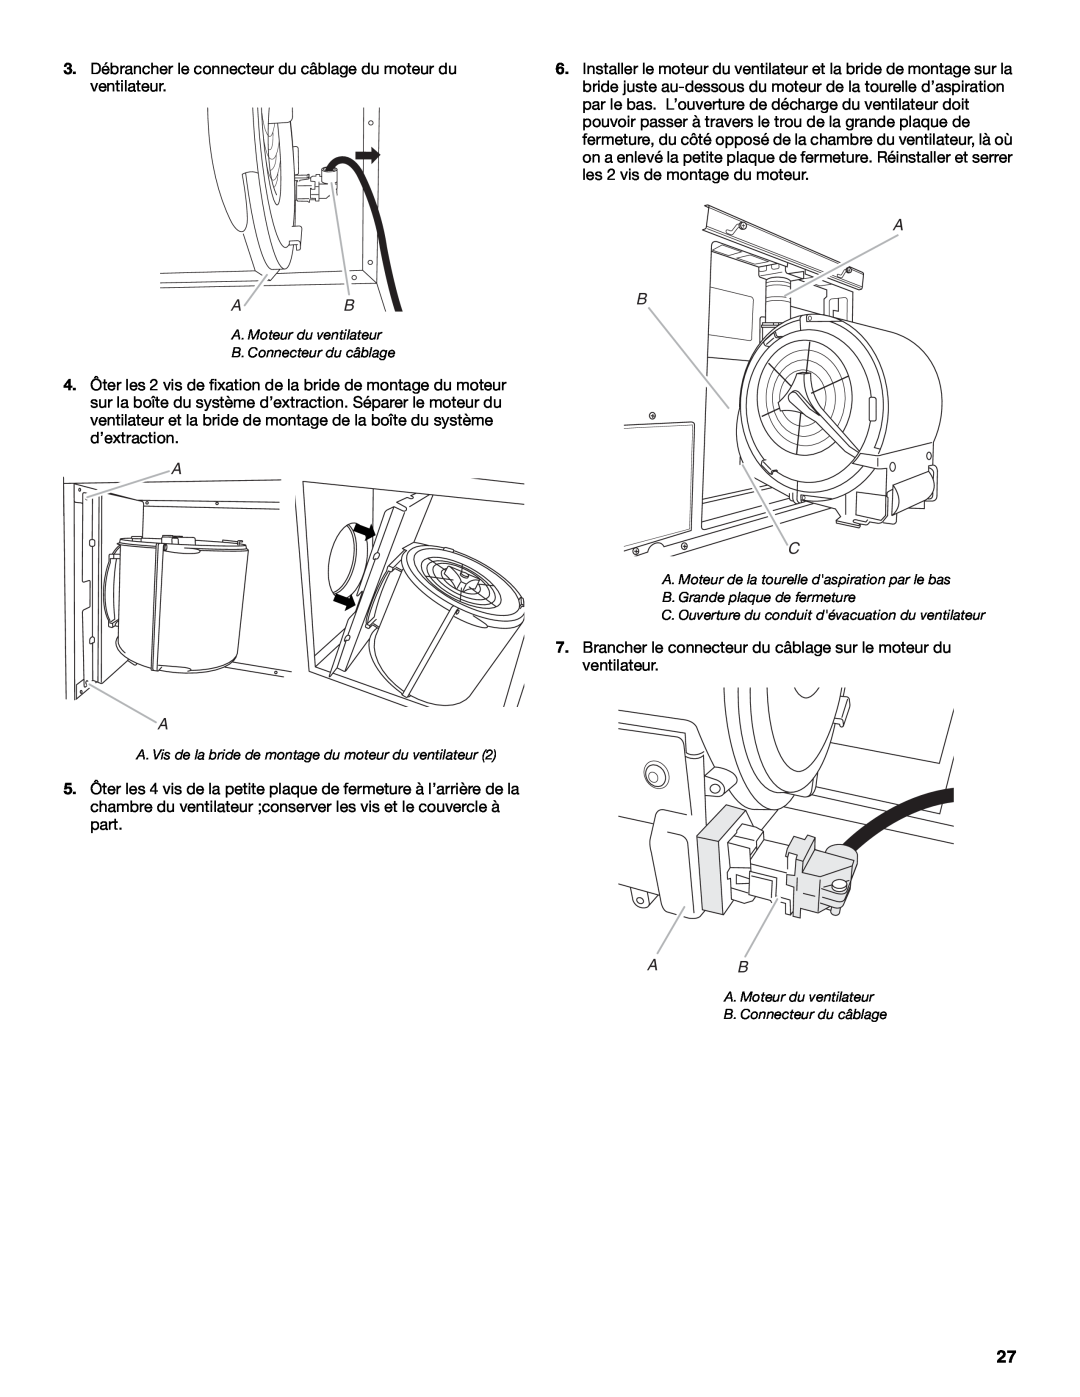 Jenn-Air W10201609B installation instructions 3. Débrancher le connecteur du câblage du moteur du ventilateur, A B C 